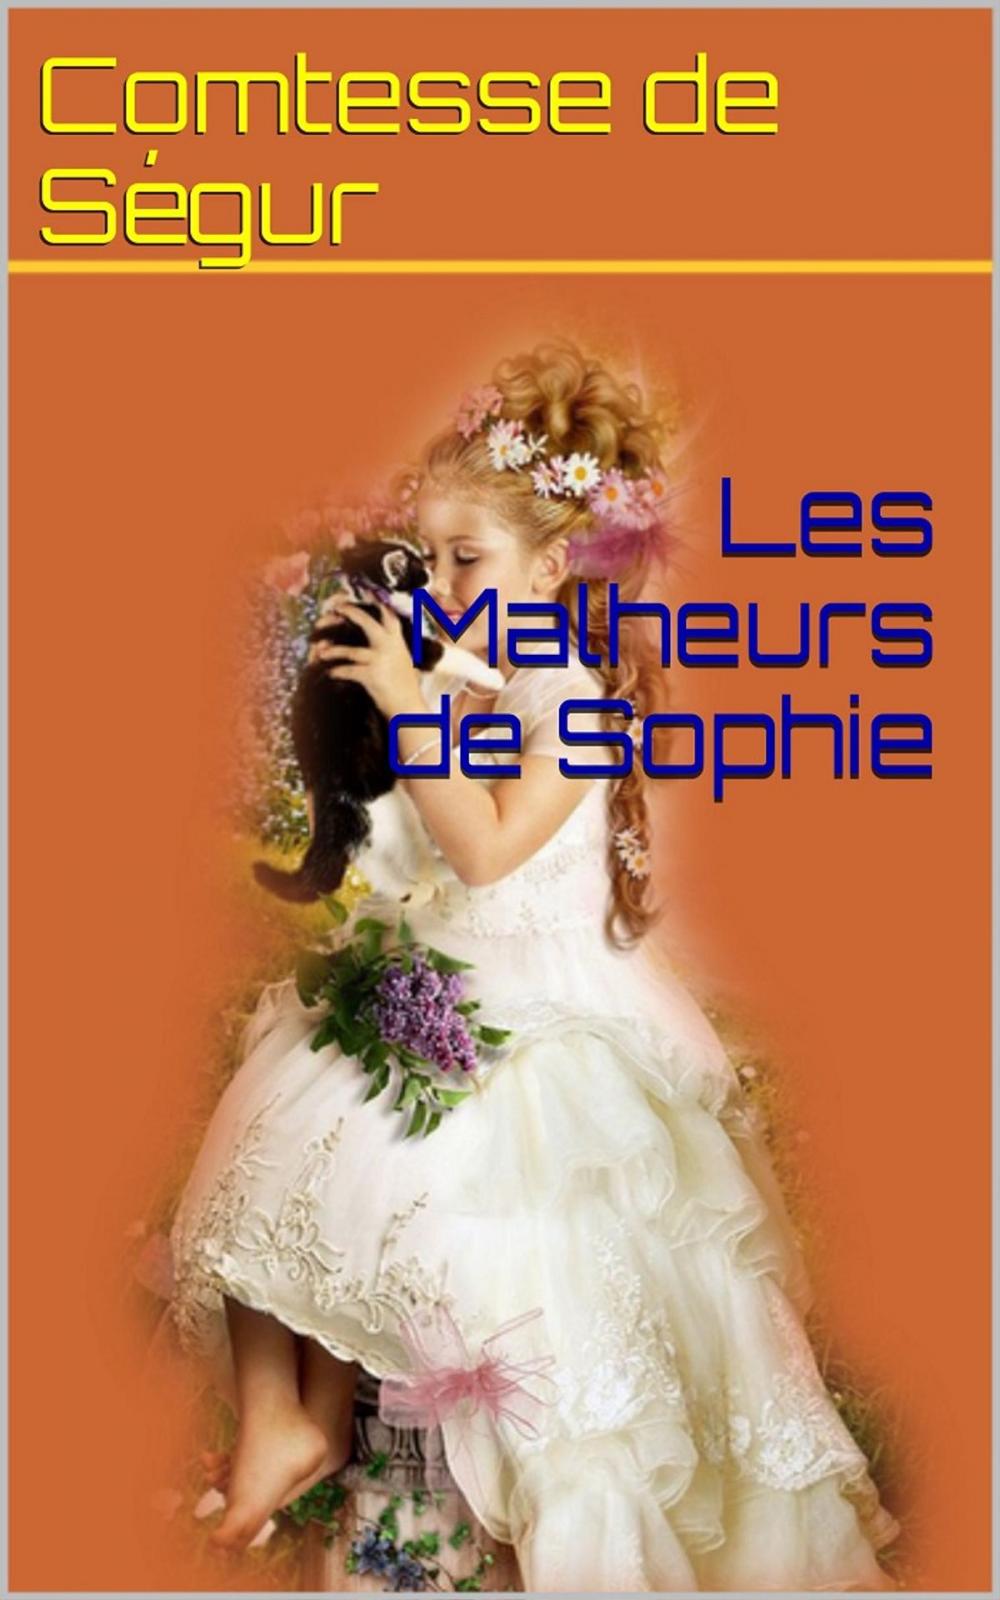 Big bigCover of Les Malheurs de Sophie